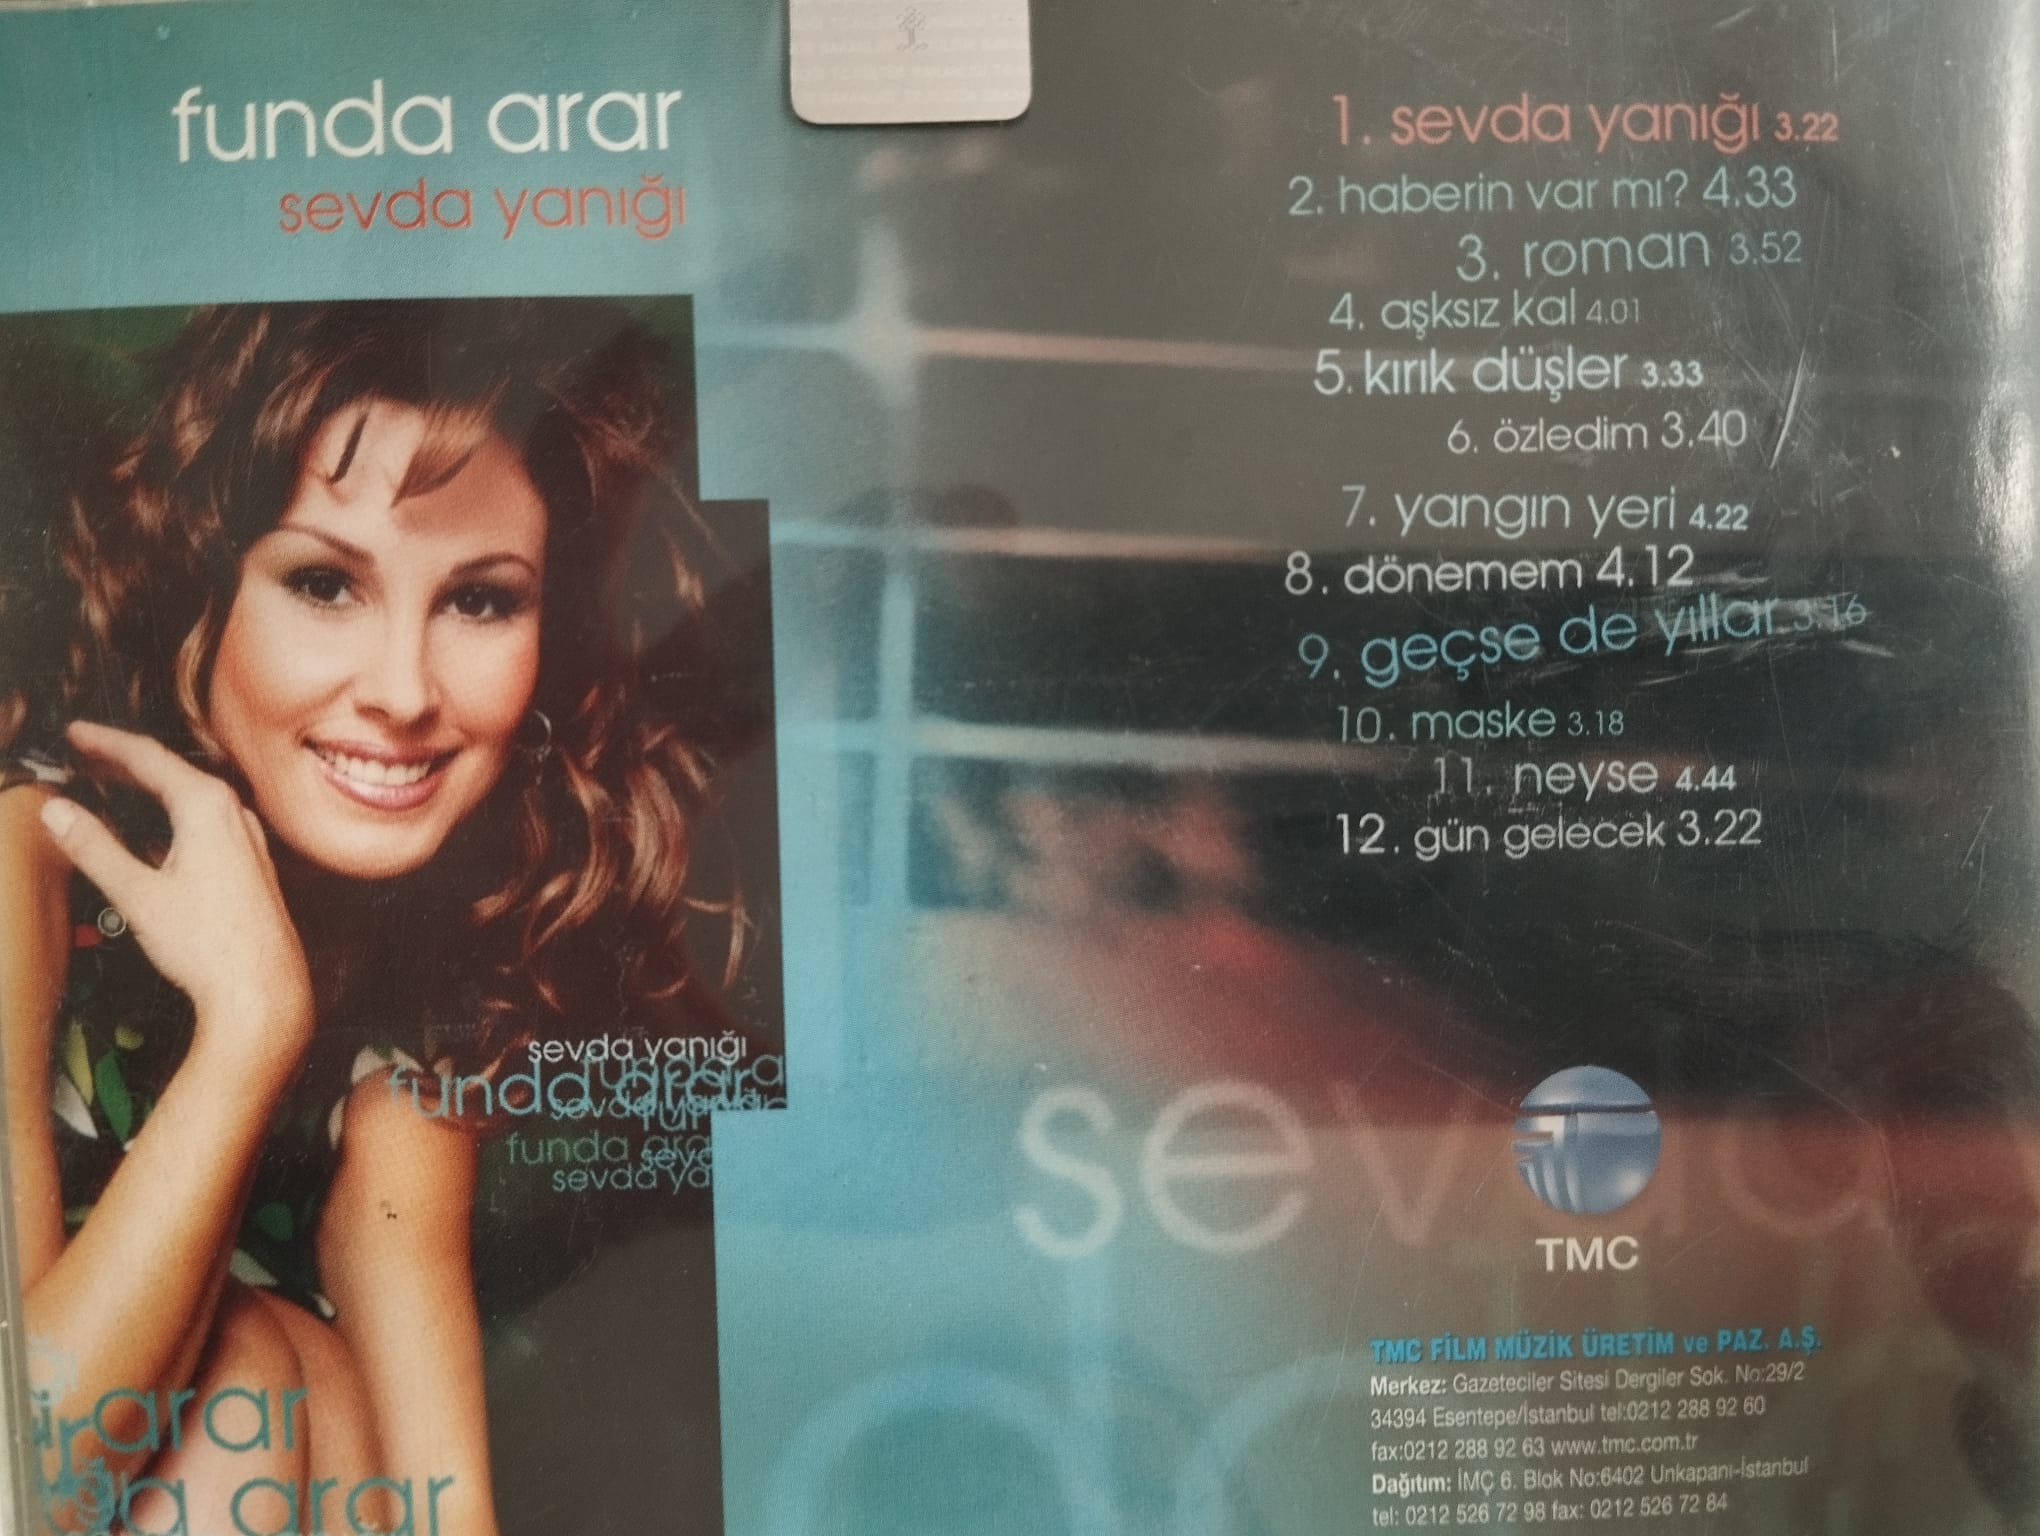 Funda Arar – Sevda Yanığı - 2003 Türkiye Basım - 2. El CD Albüm